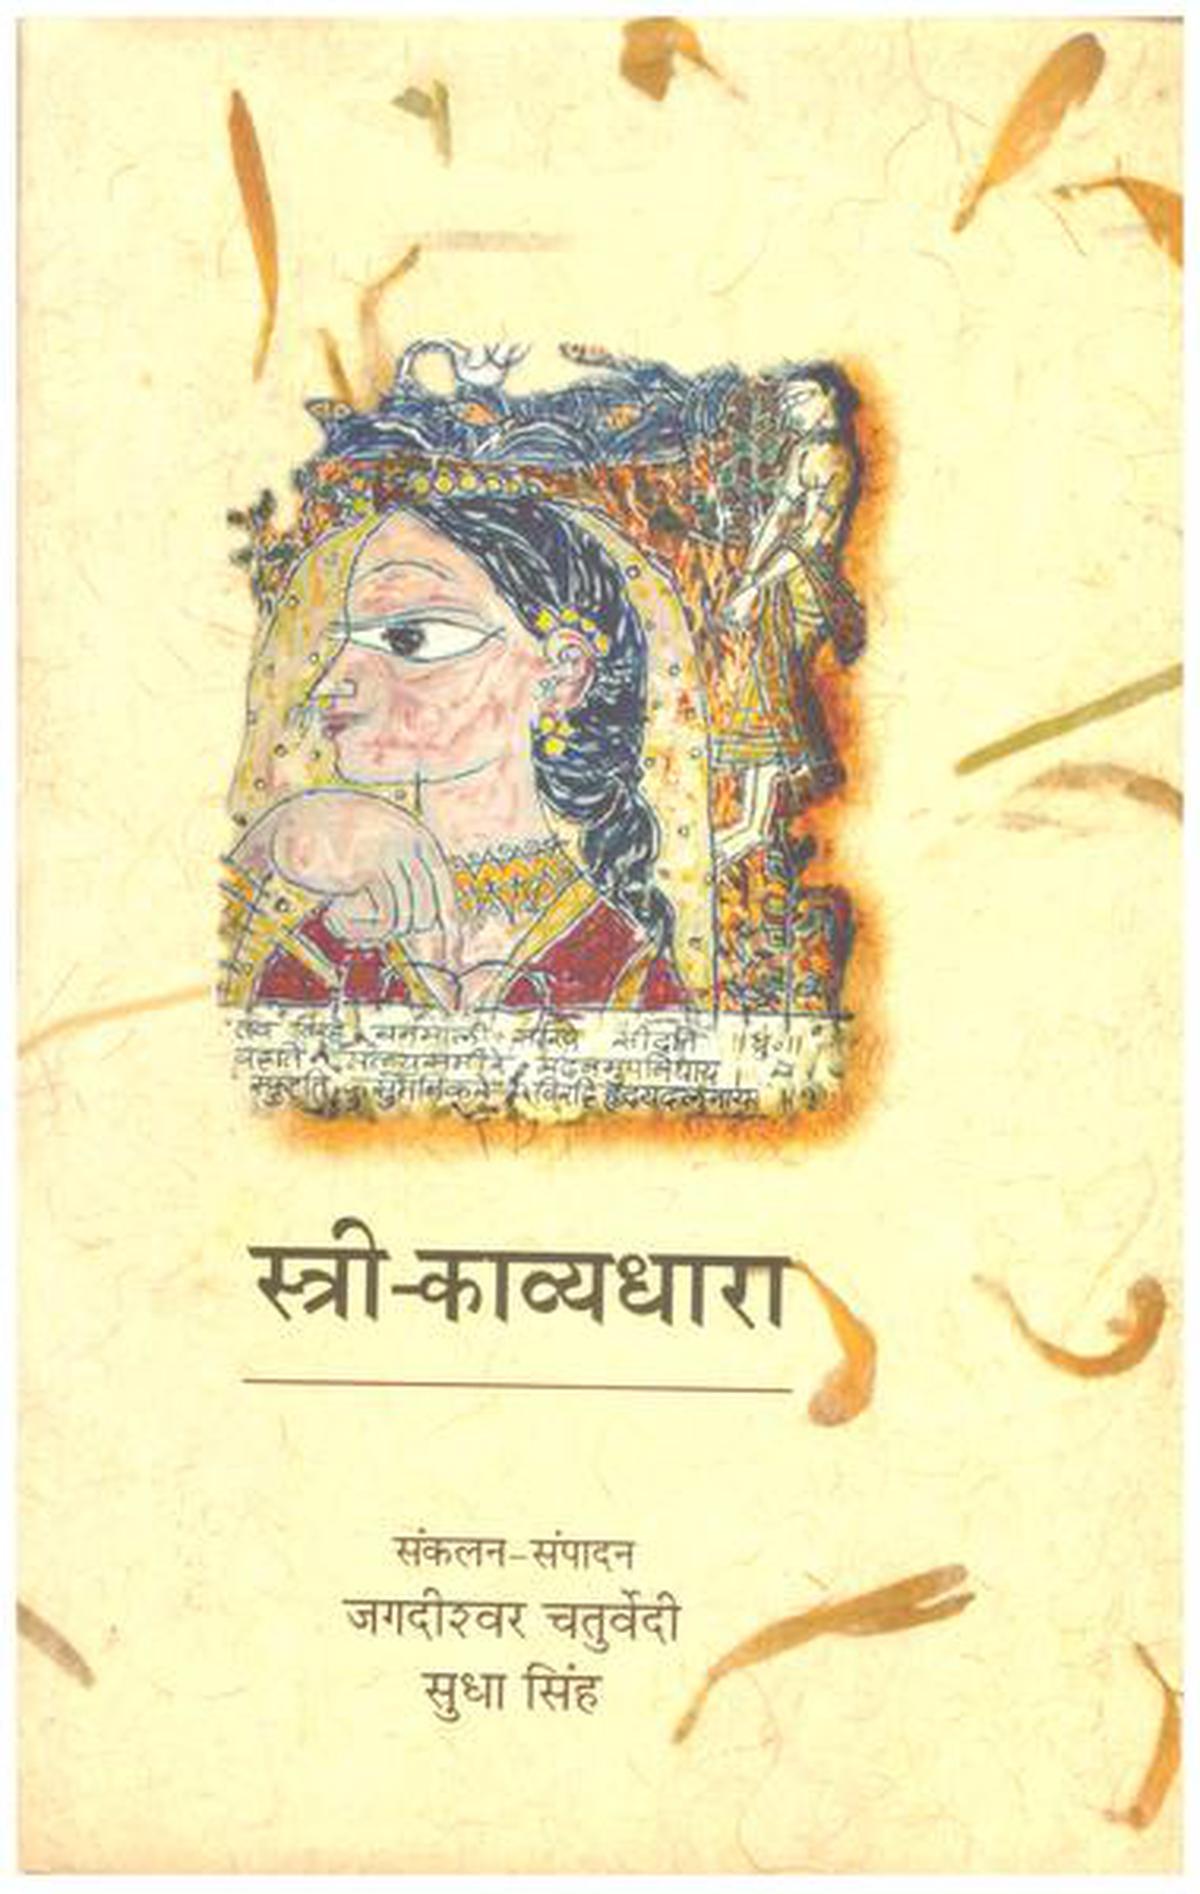 जगदीश्वर चतुर्वेदी और सुधा सिंह द्वारा लिखित 'स्त्री काव्यधारा' (महिला कविता की धारा), 2006, 1388 और 1950 के बीच लिखी गई महिलाओं की कविता का खजाना है।